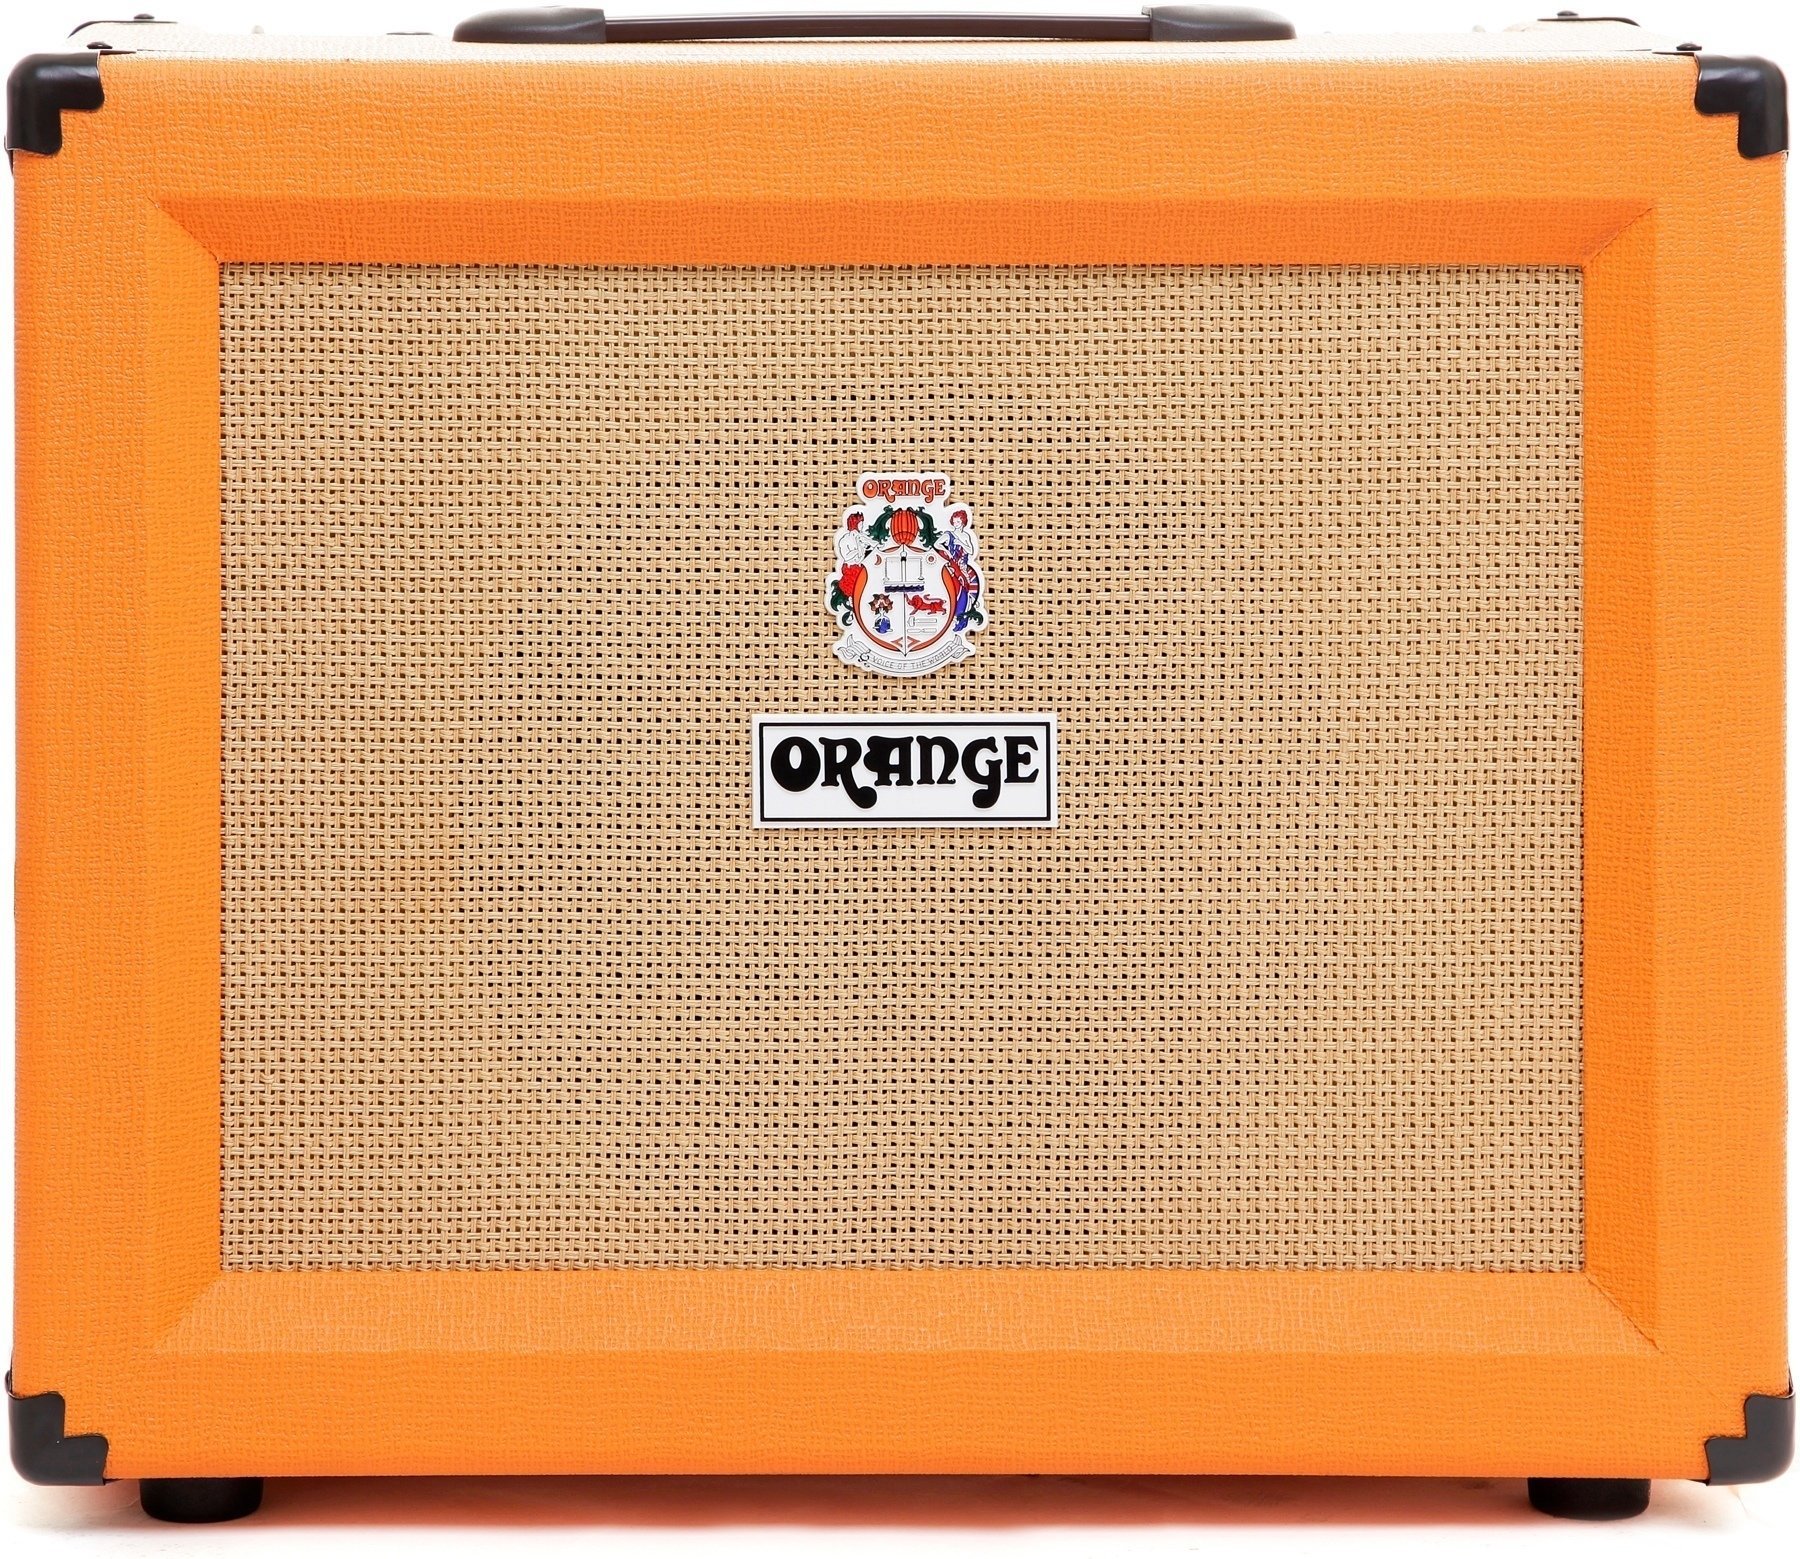 Combo guitare Orange CR60C Crush (Déjà utilisé)